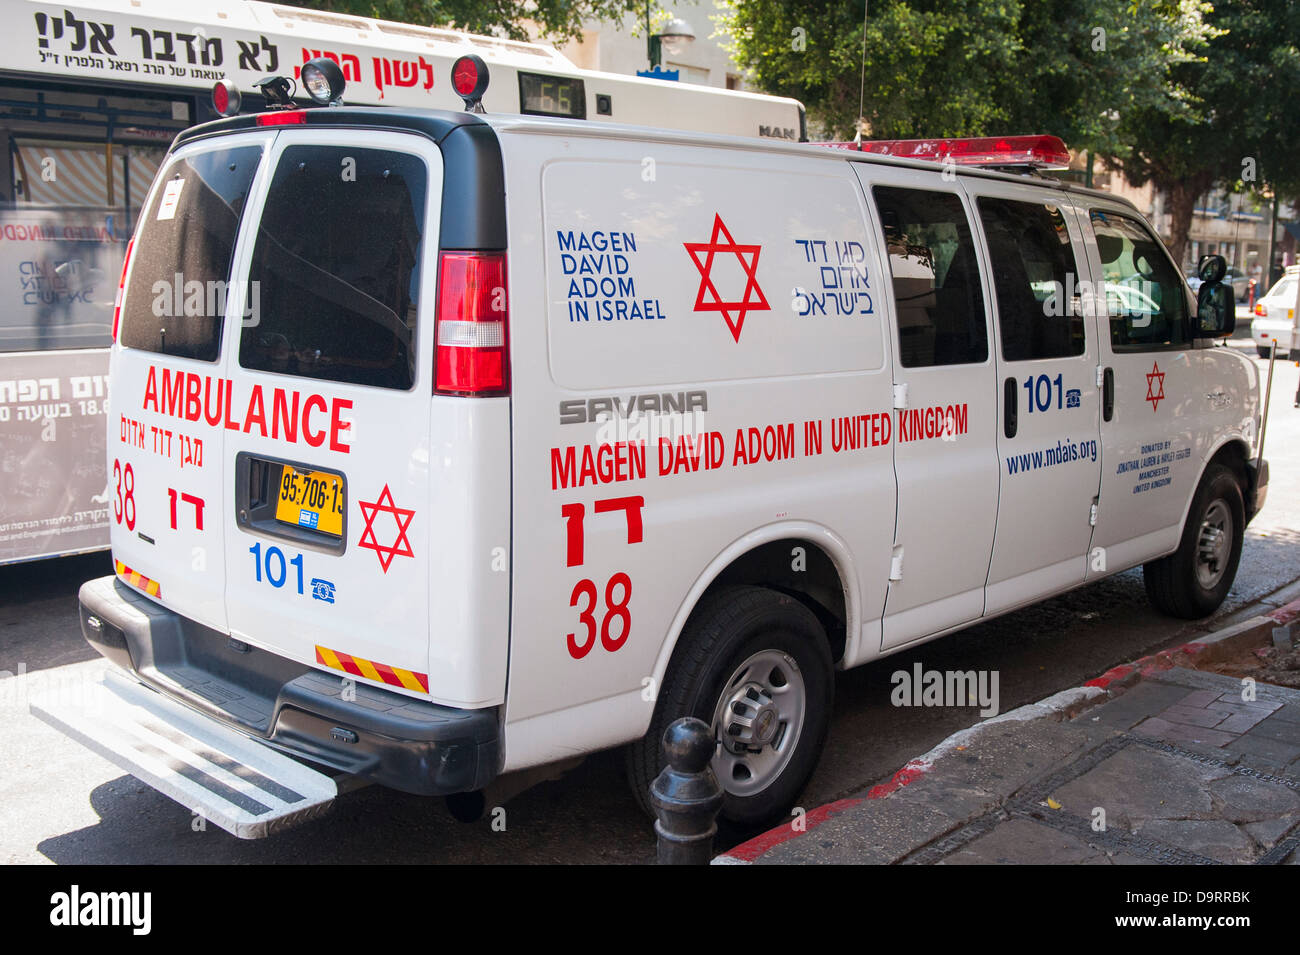 Israele Tel Aviv Magen David Adom MDA UK donazione famiglia Ferster ambulance service emergenza GMC Savana scena di strada il traffico di persone Foto Stock